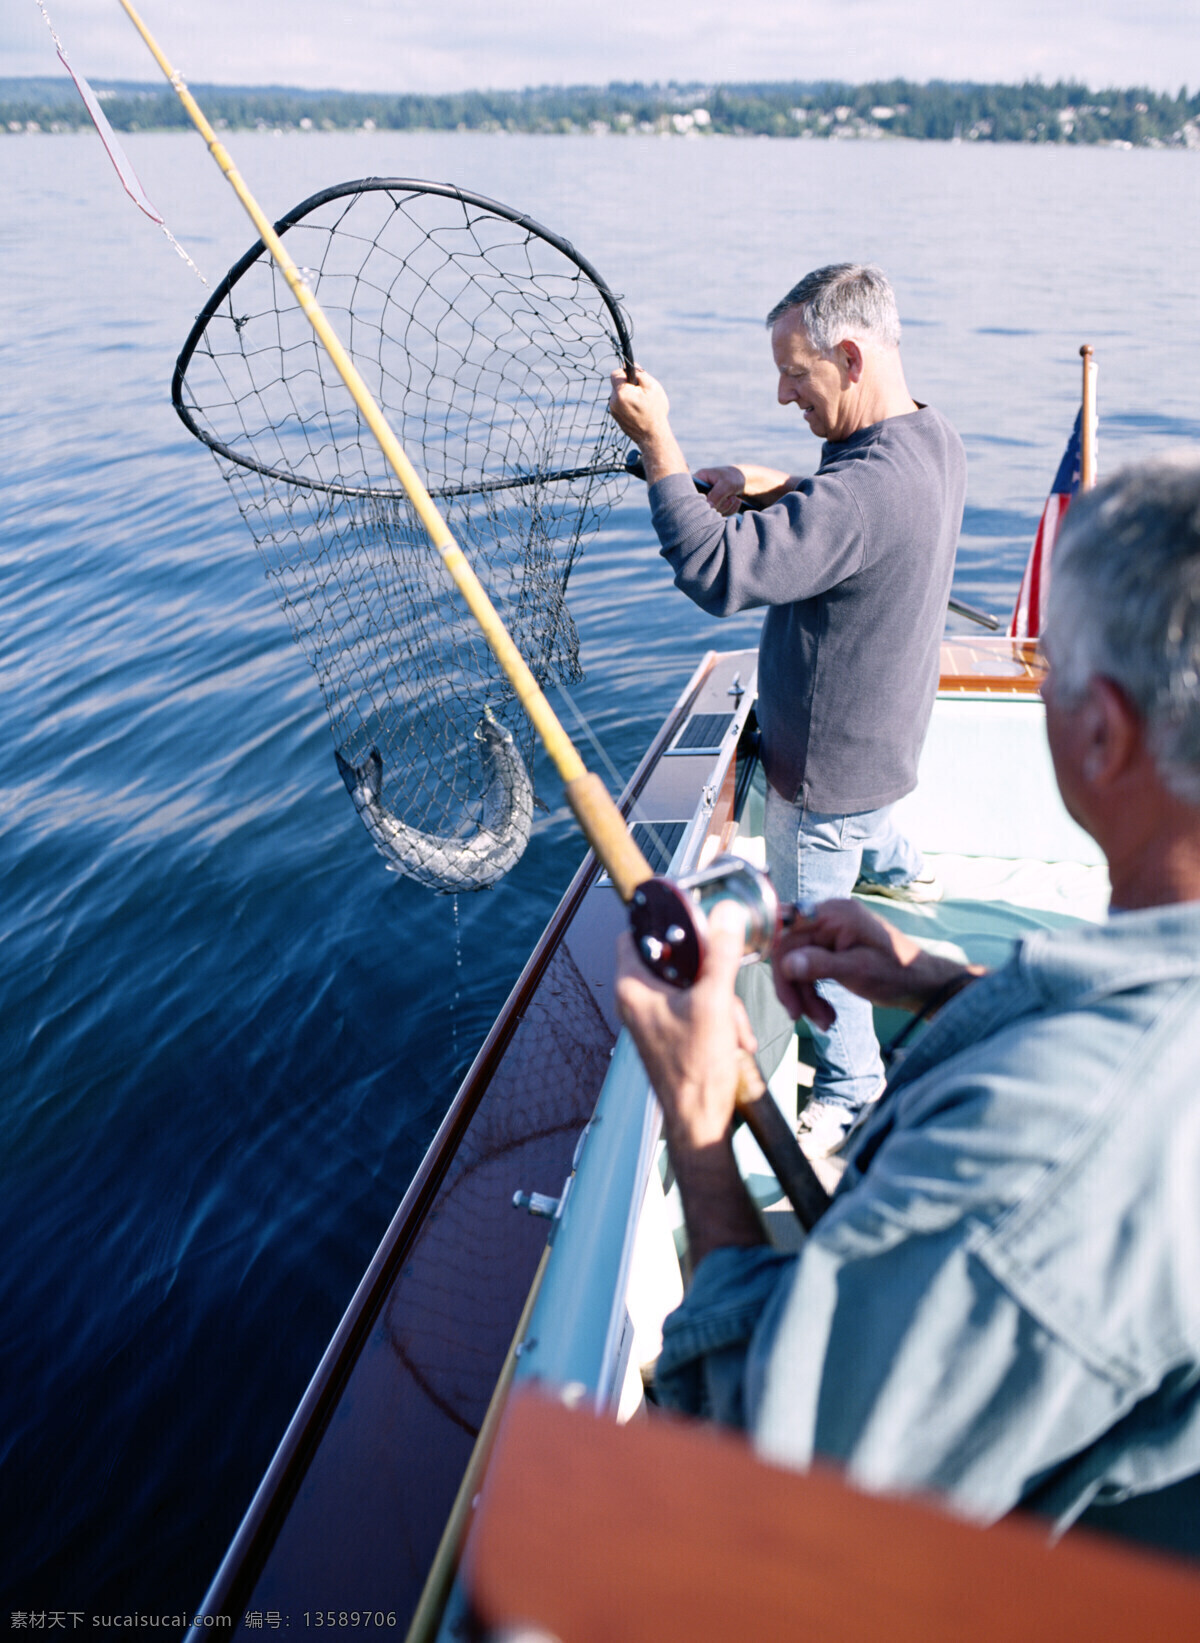 船上 捕鱼 人 钓鱼 钓鱼素材 休闲 垂钓 渔具 鱼竿 其他类别 生活百科